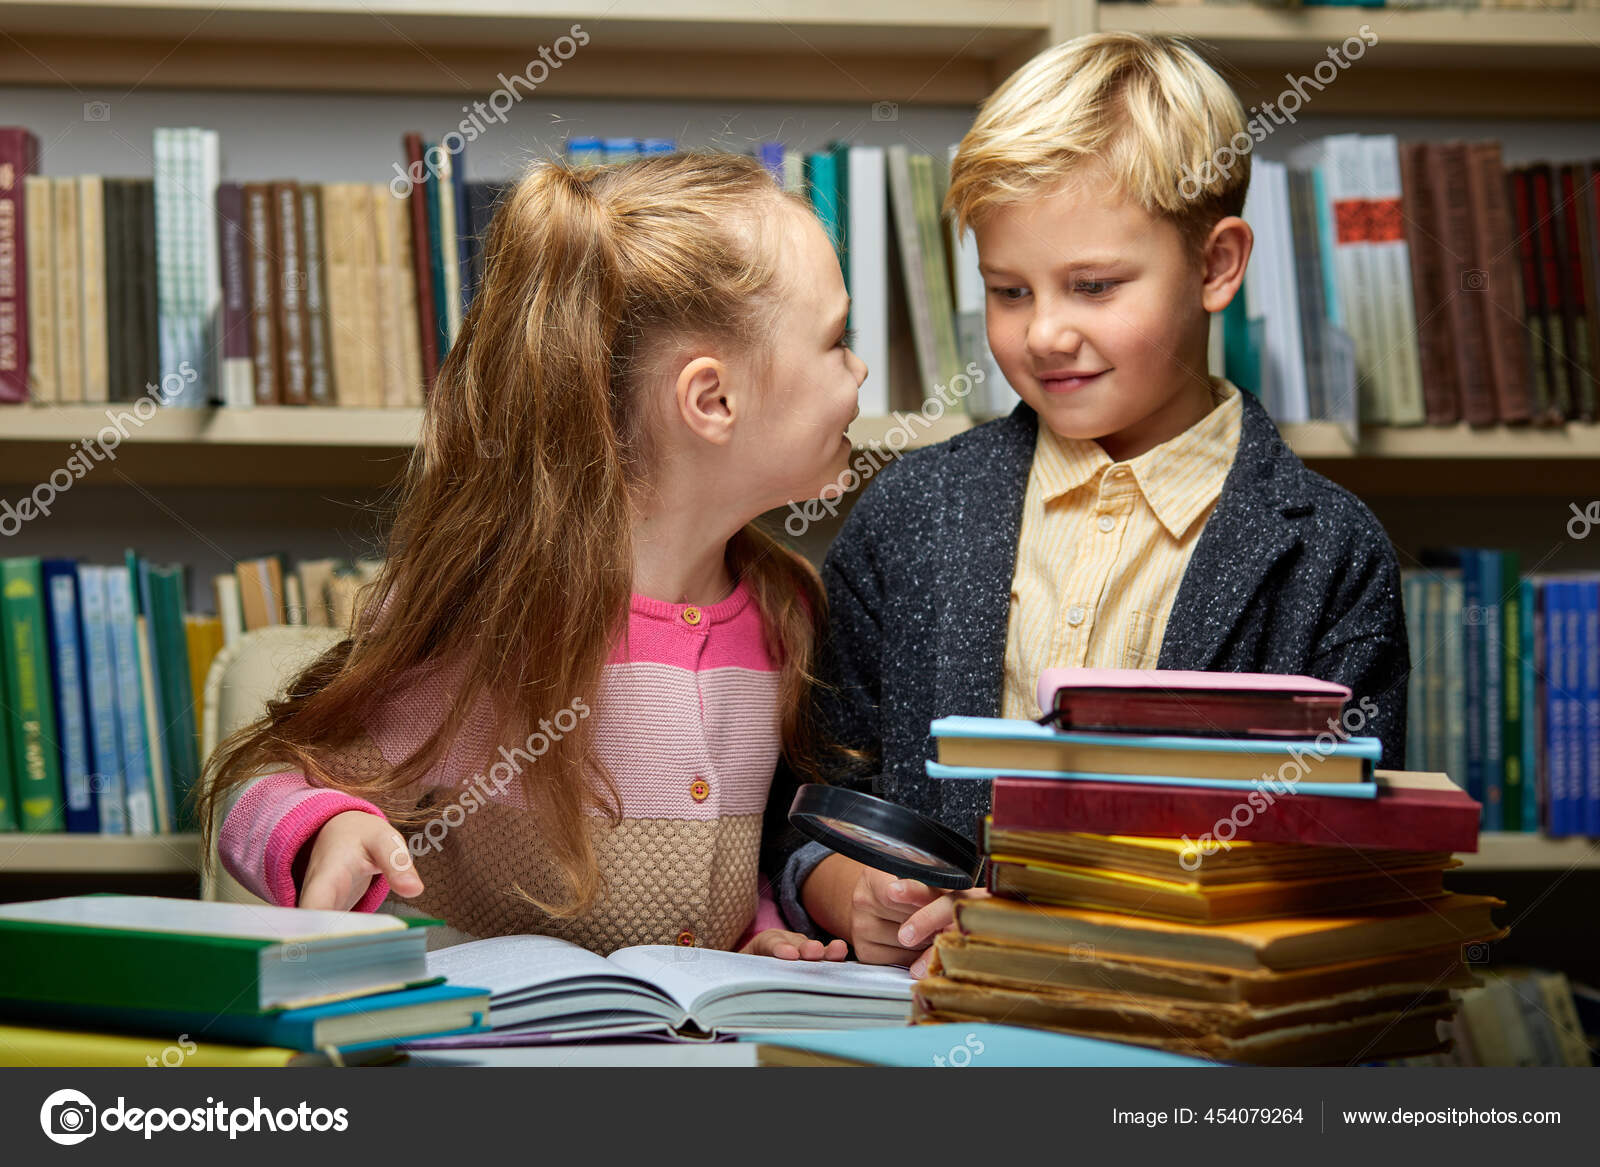 Два дружелюбных школьника обсуждают книгу стоковое фото ©ufabizphoto 454079264